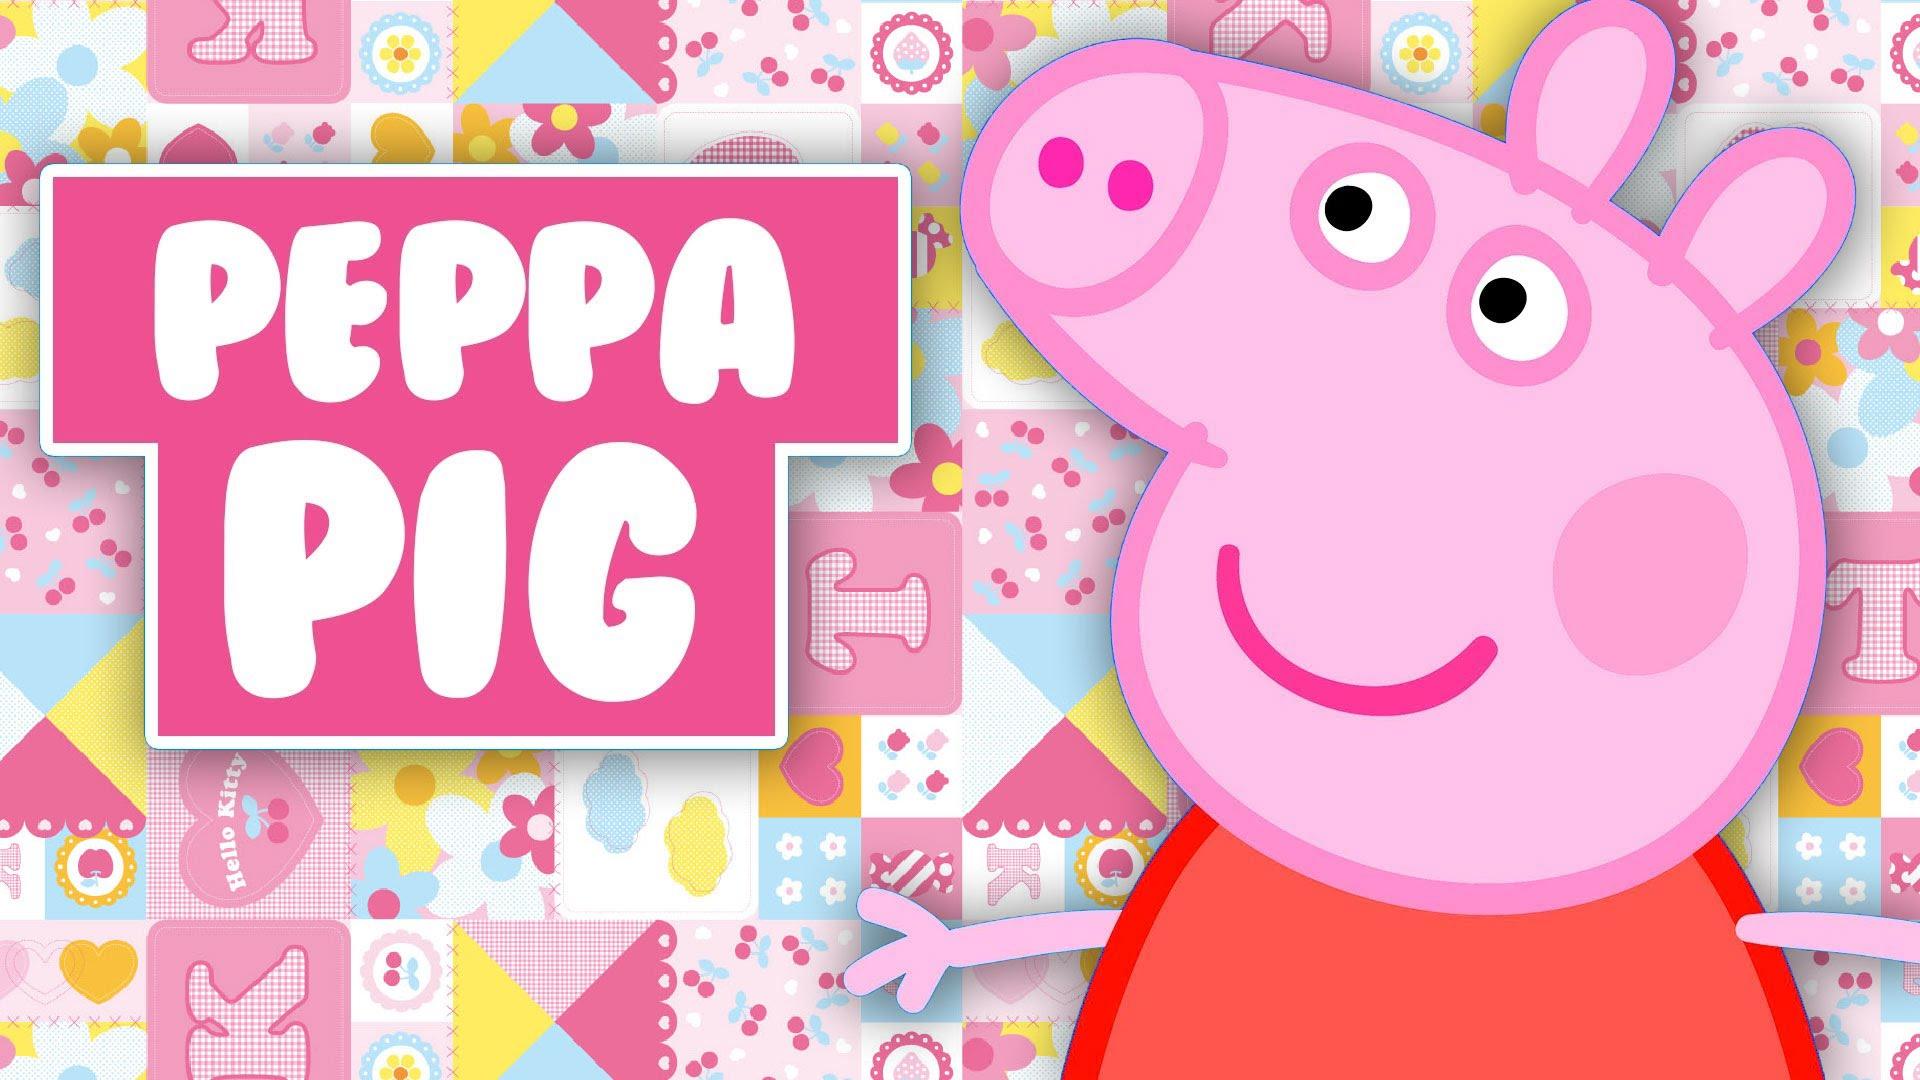 Peppa Pig Wallpaper Desktop, 0.03 Mb